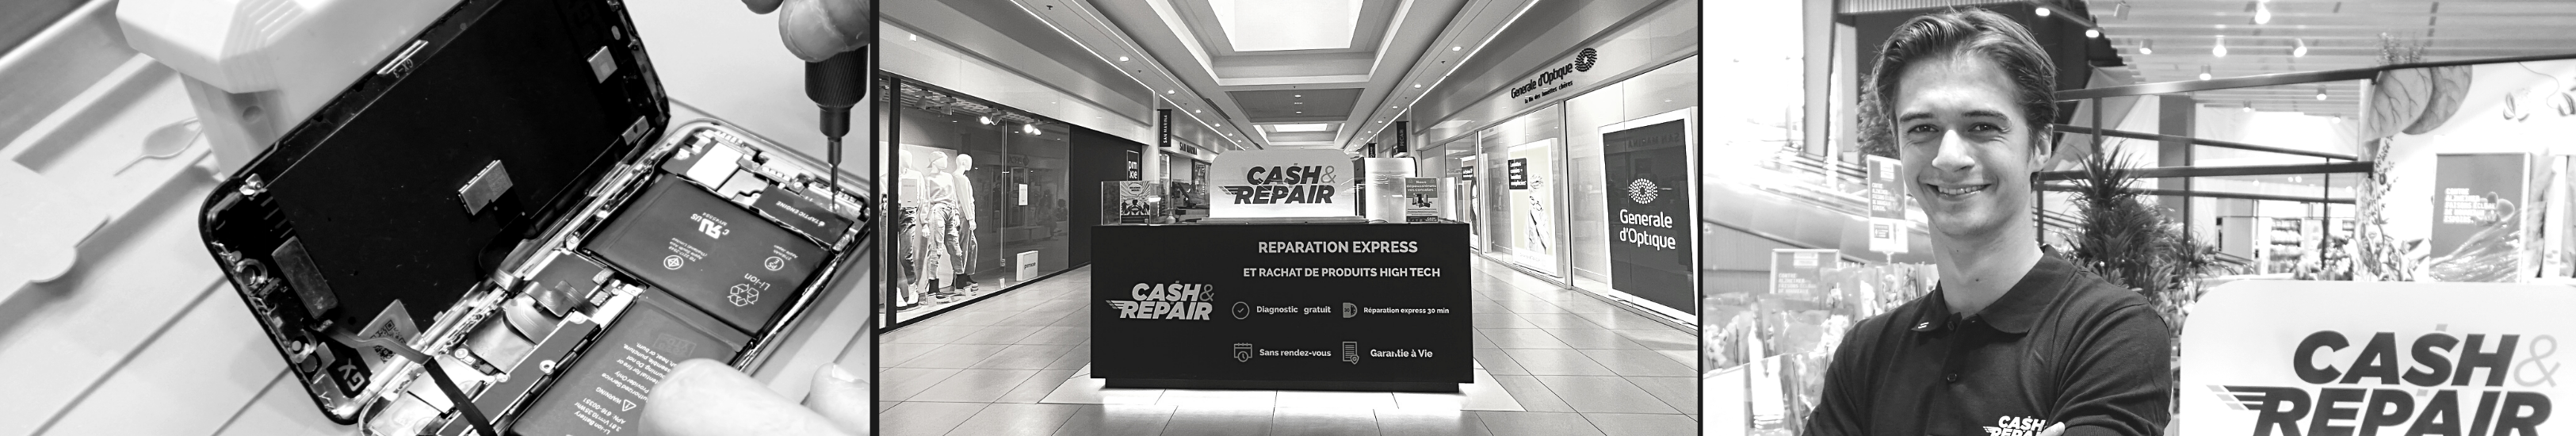 - Atelier de réparation Cash and Repair Orvault